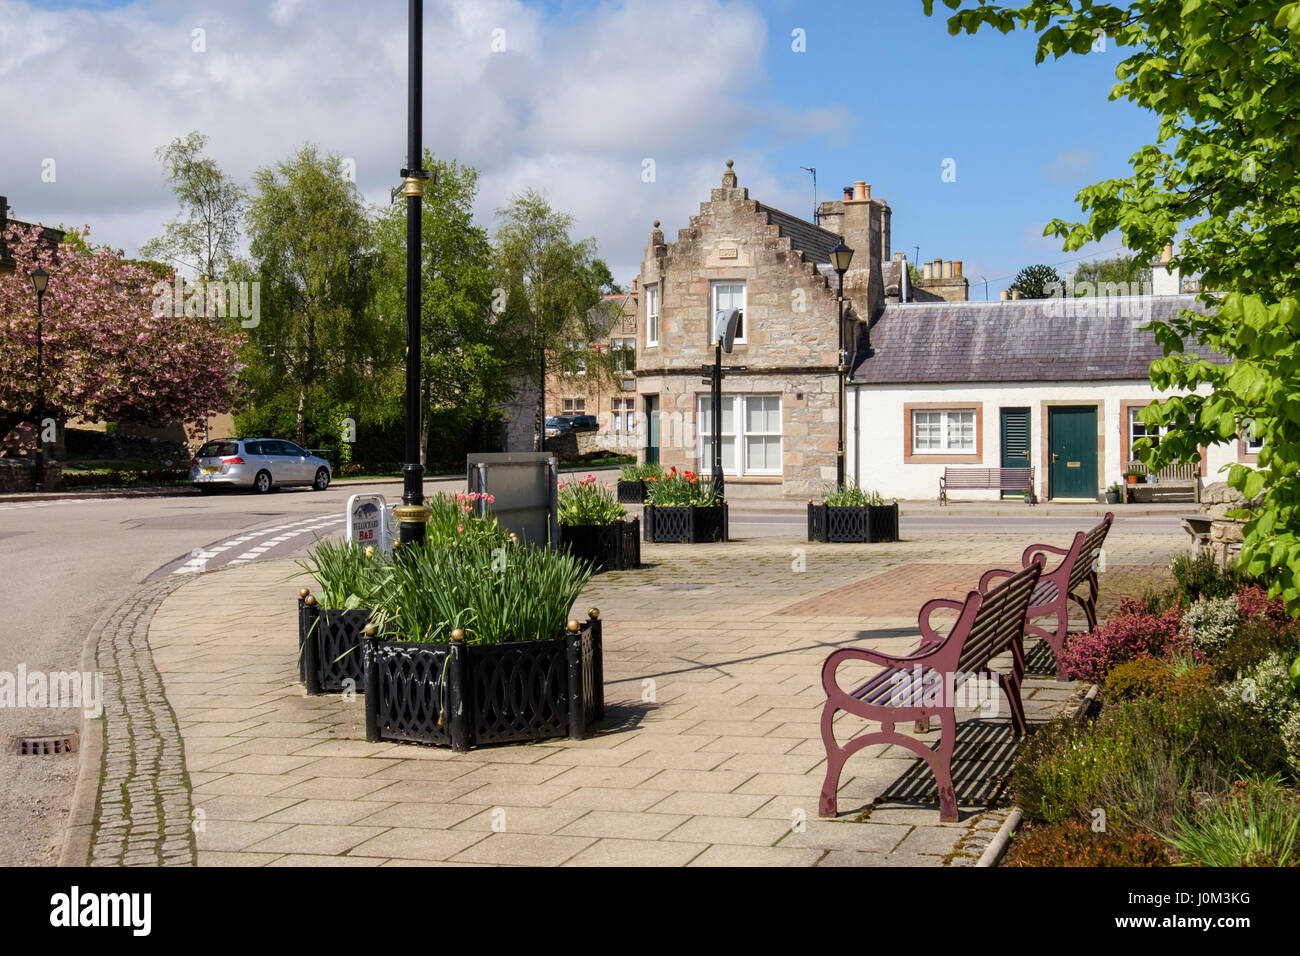 Bancs dans le centre historique de la petite ville écossaise. Royal Burgh de Dornoch, Sutherland, Highland, Scotland, UK, Grande-Bretagne Banque D'Images